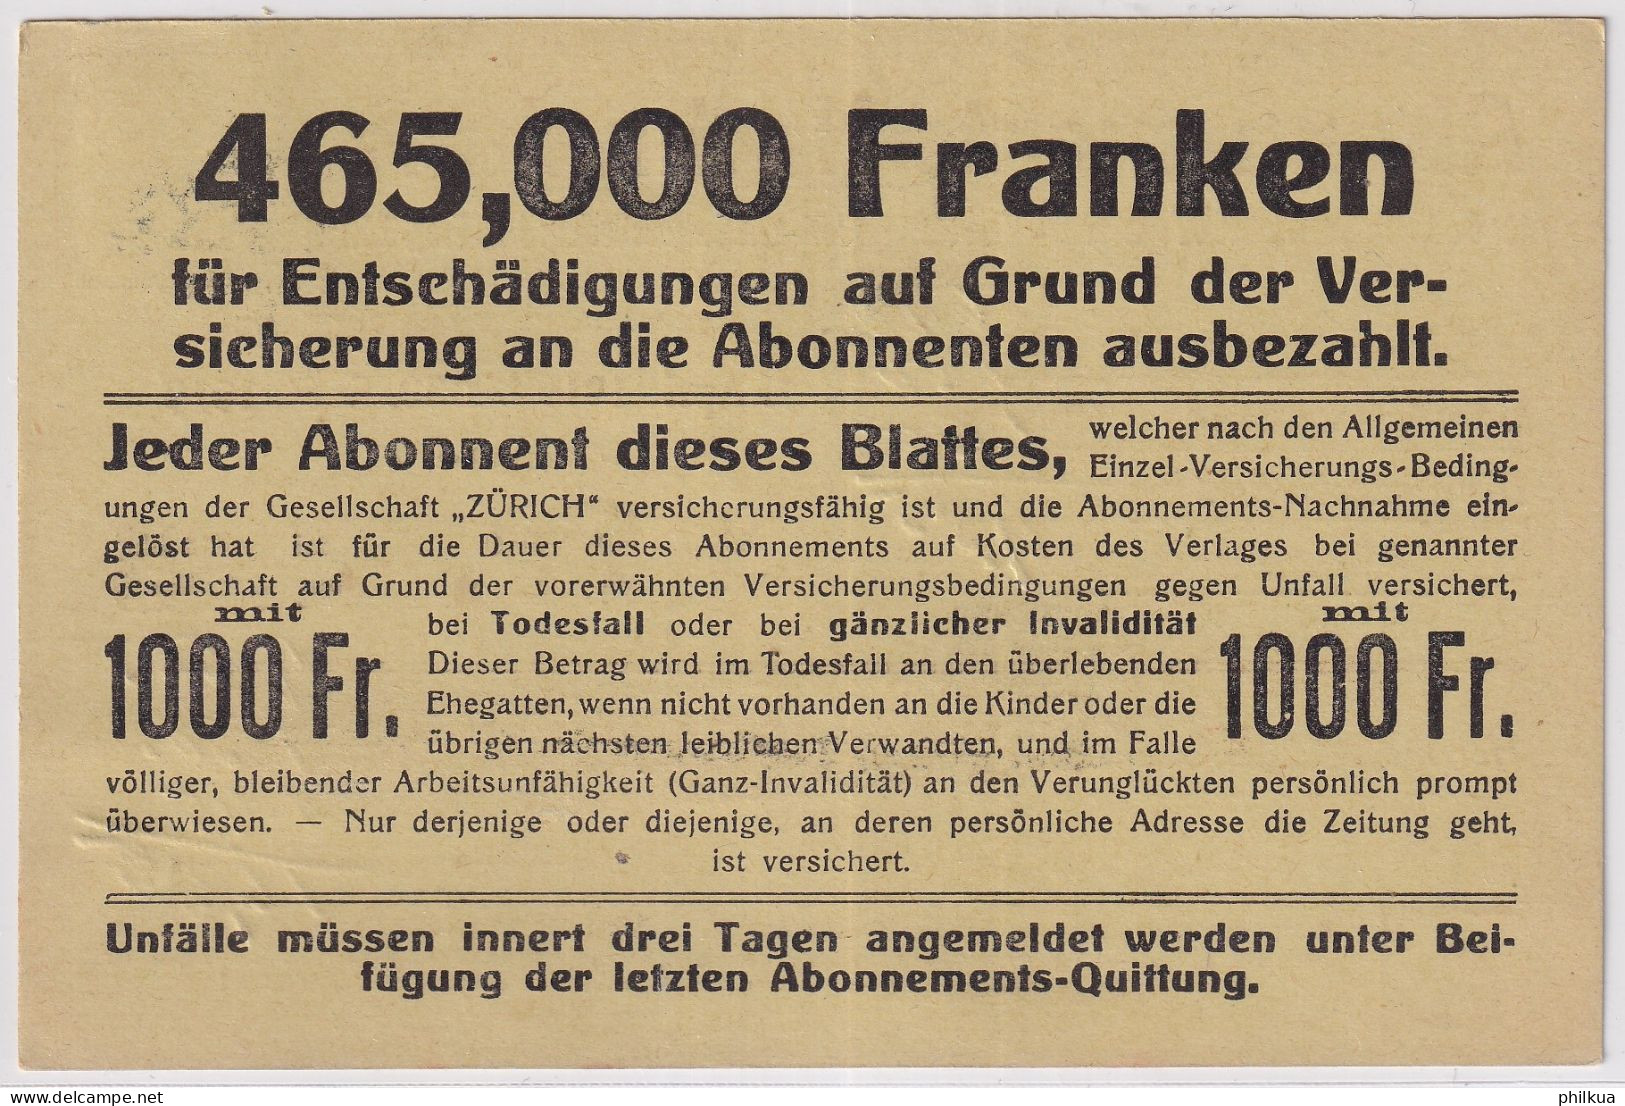 Zum. 139 / MiNr. 139x Auf Abonnements NN-Karte - Schweizer Wochen-Zeitung - Zürich Seelnau - Winterthur - Brieven En Documenten